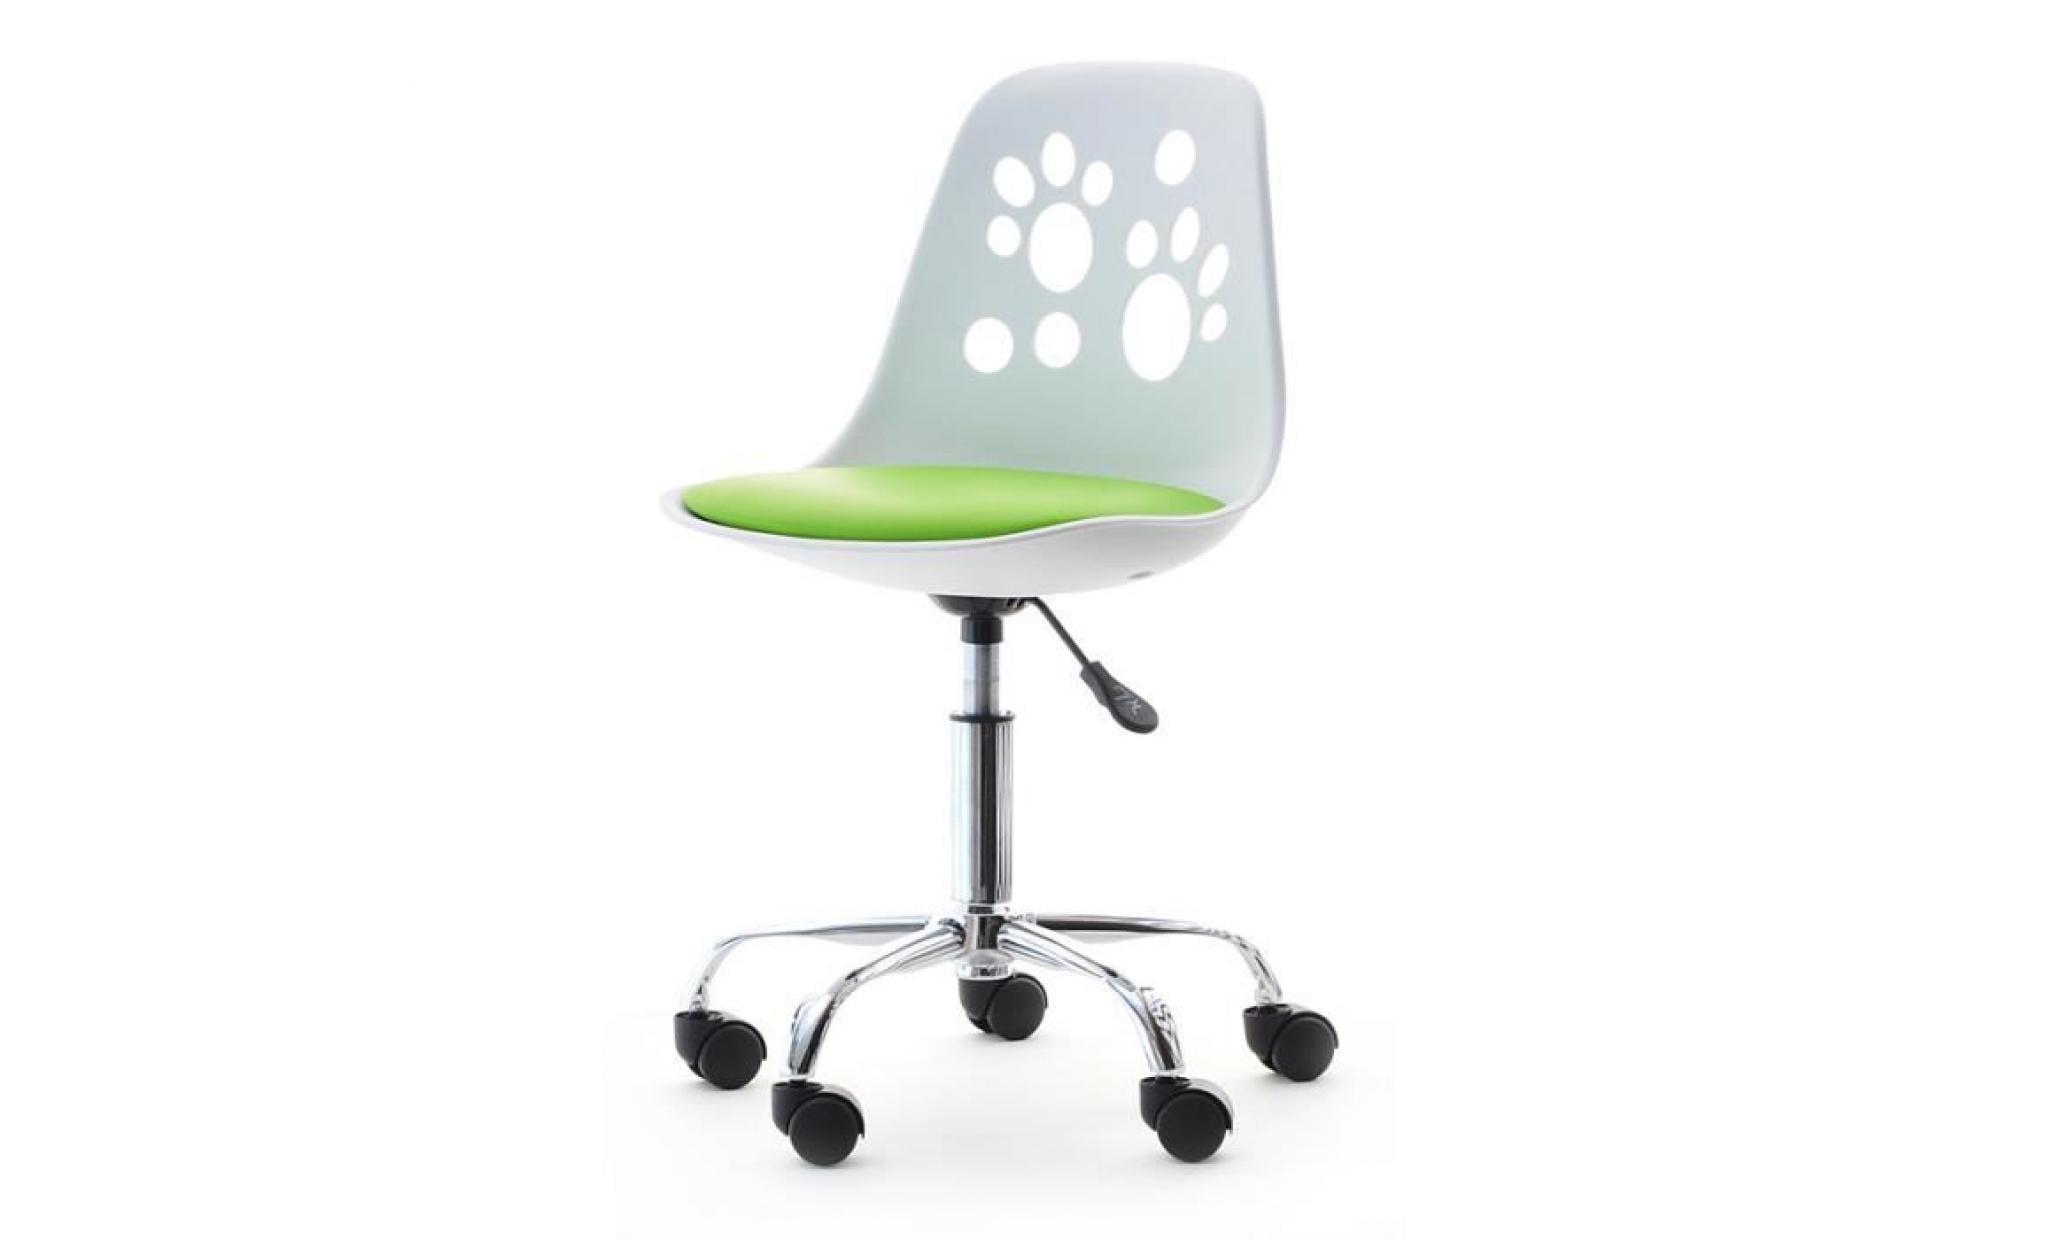 fauteuil d'enfant / chaise de bureau   foot   40 cm   blanc / vert   design moderne   réglable   pivotant pas cher